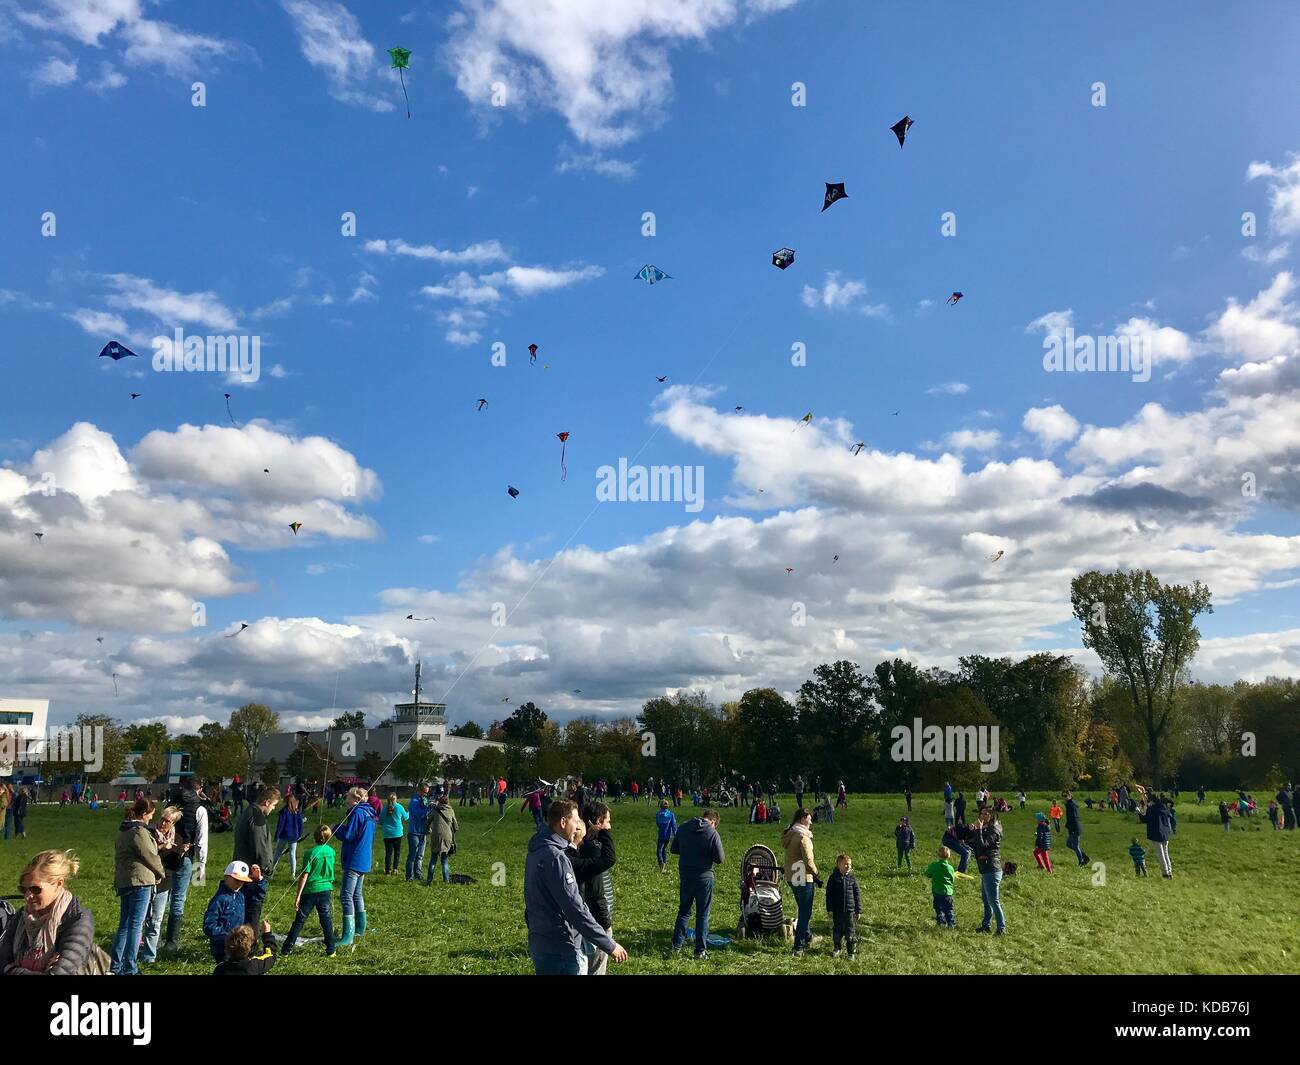 Novedrate, Germania - 3 ottobre 2017: centinaia di aquiloni sono volare nel cielo durante il kite festival sulla riunificazione tedesca giorno al scharn Foto Stock